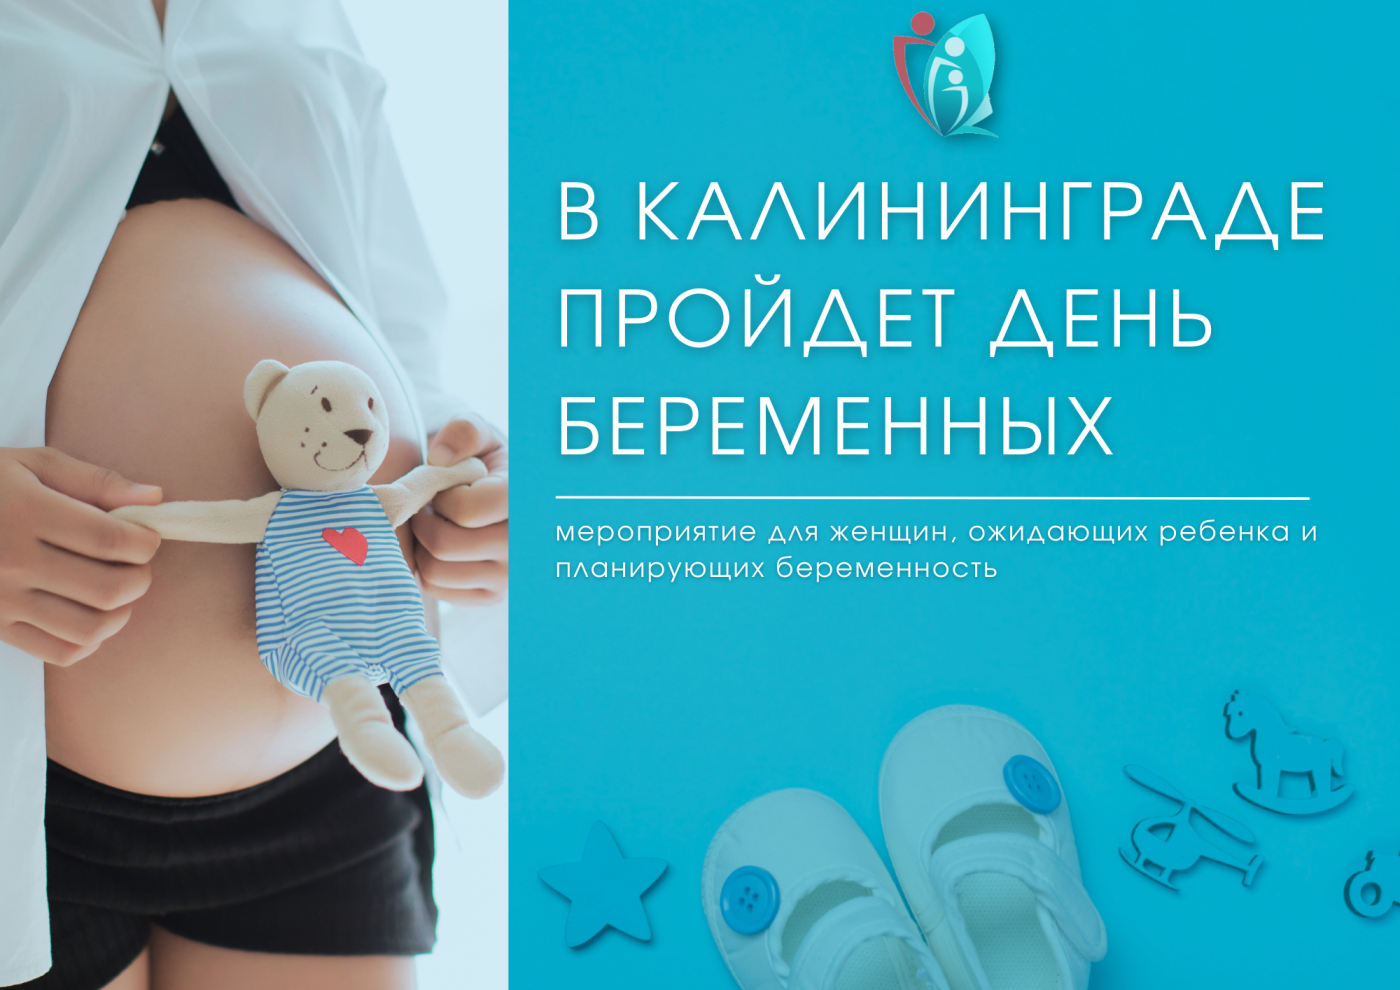 6 октября в Калининграде пройдет День беременных - мероприятие для женщин, ожидающих ребенка и планирующих беременность